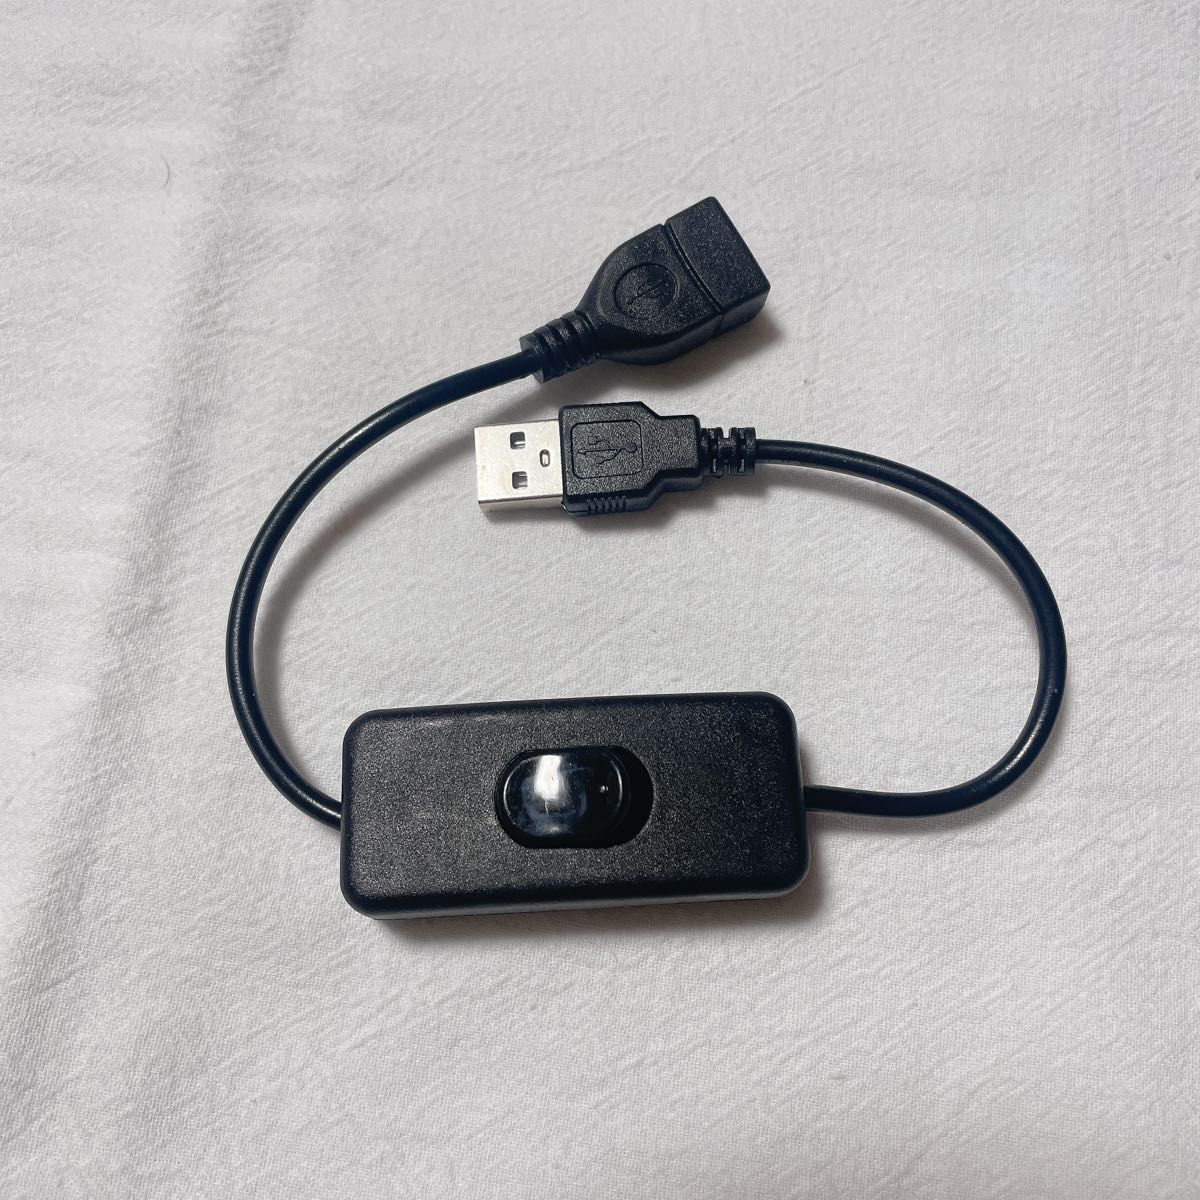 ノーブランド 品 USB A オスメス 延長ケーブル オン/オフスイッチ付き